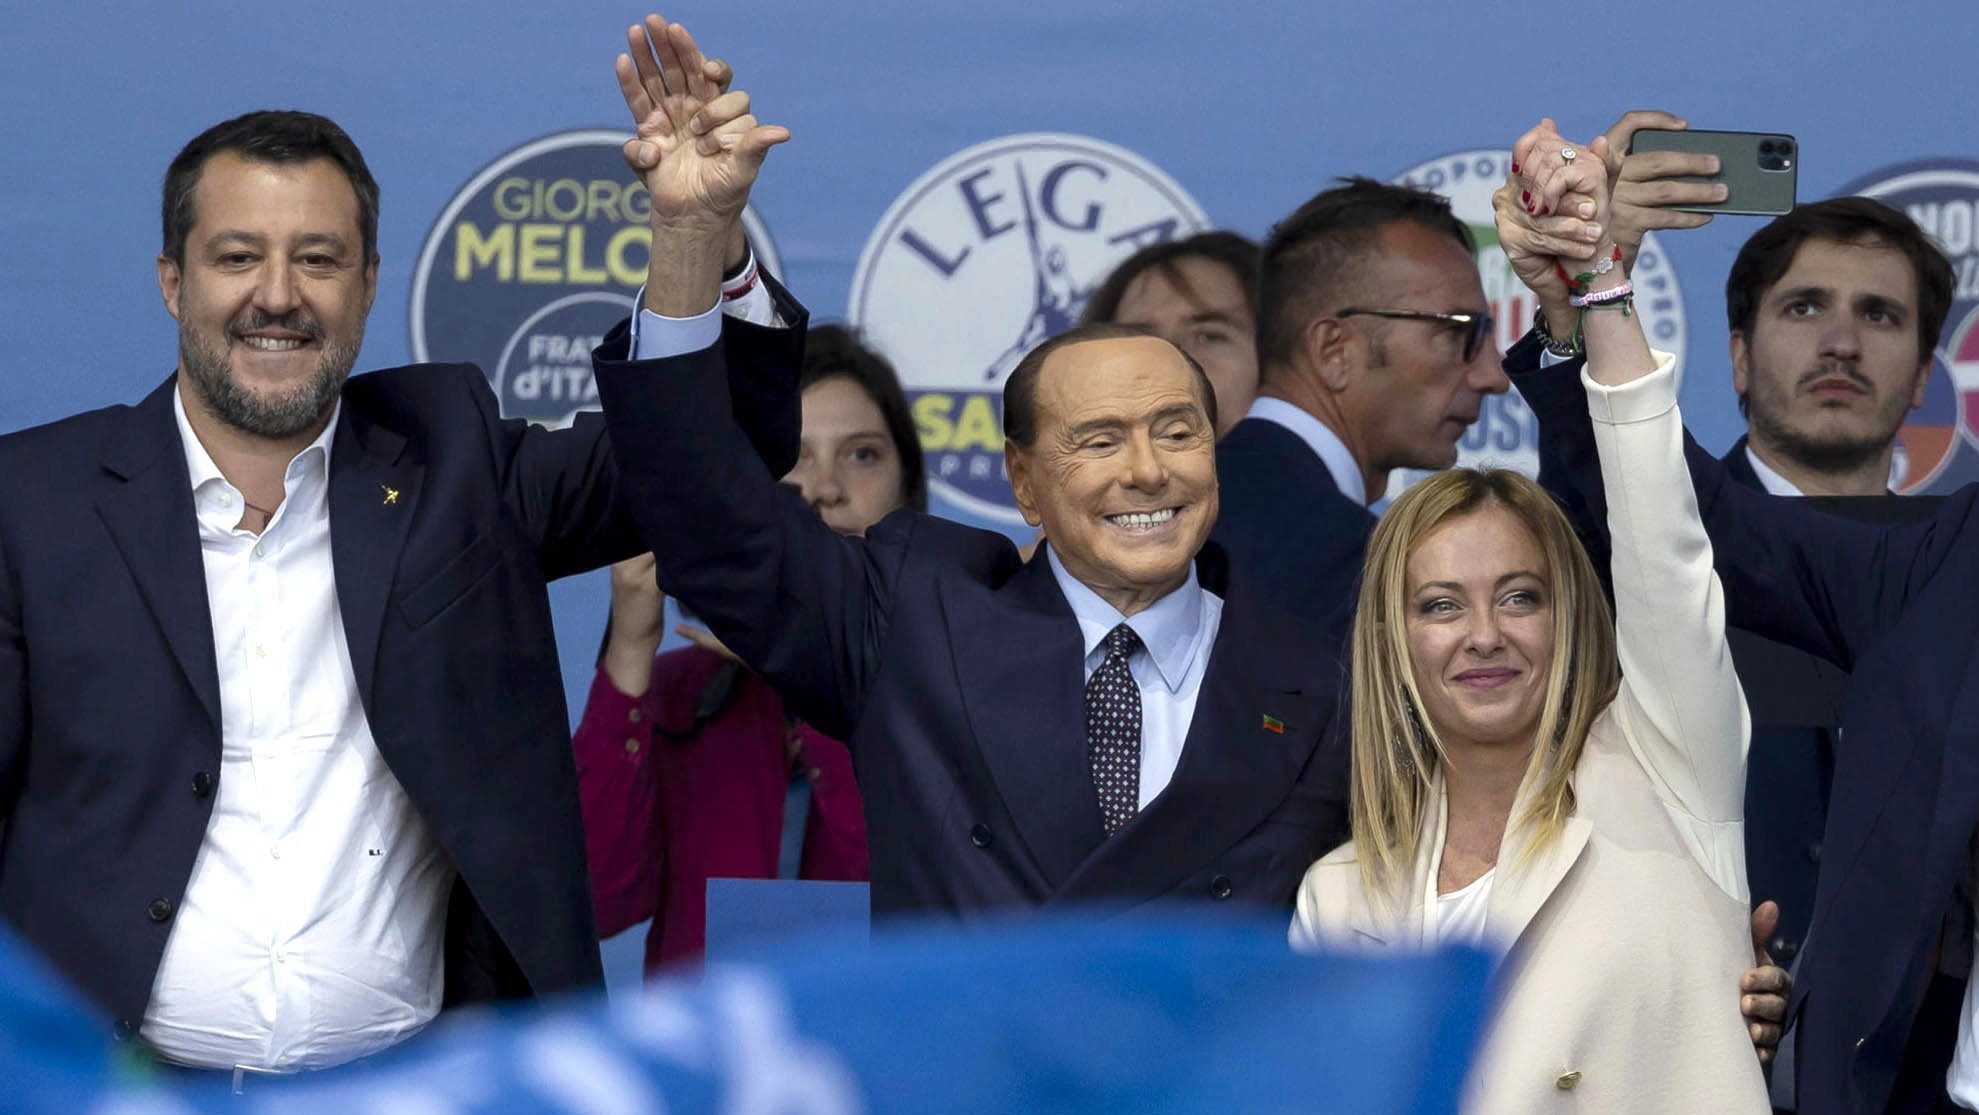 A bajor miniszterelnök szerint nem jó az olasz választás eredménye Európának